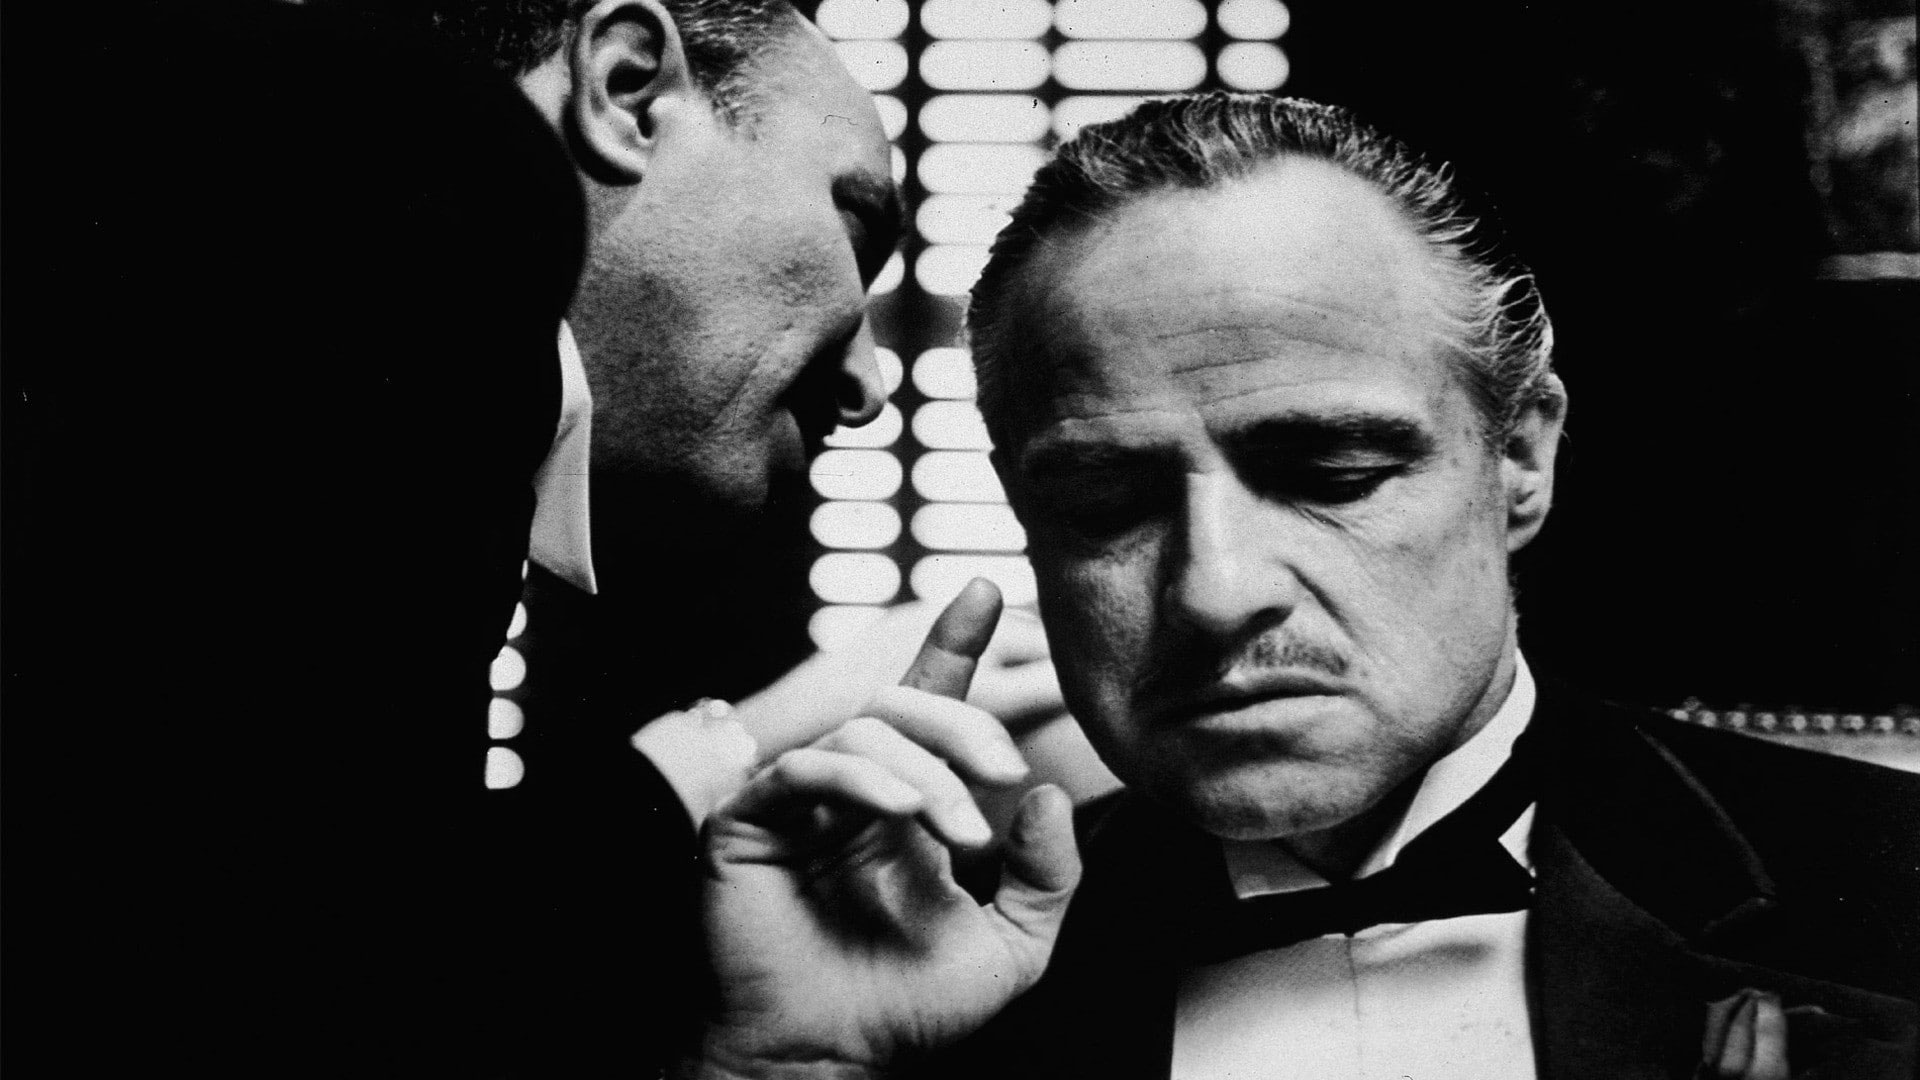 Wallpaper The Godfather, Monochrome, Marlon Brando, Vito